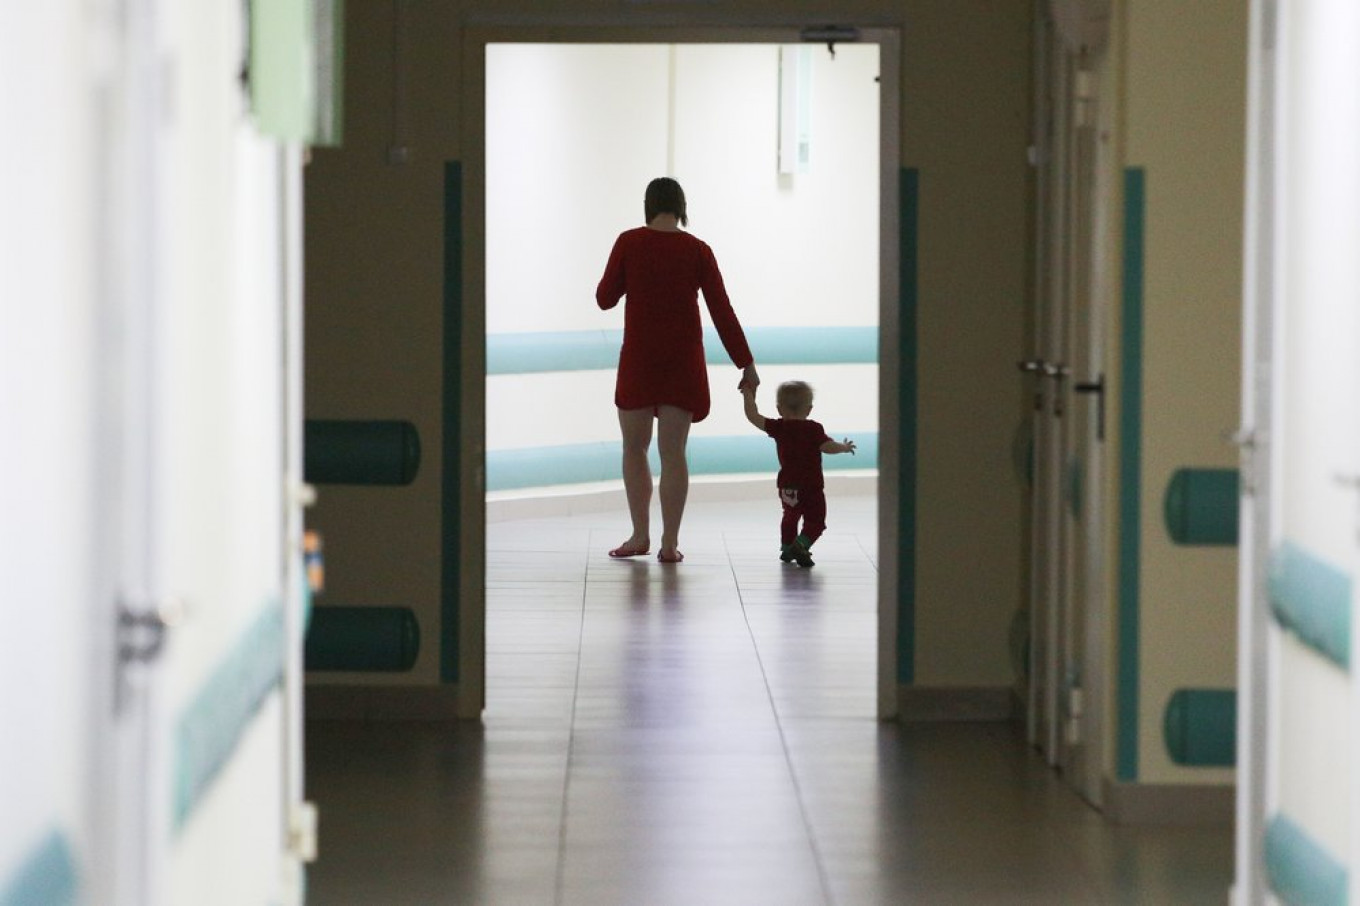 Russia Drops Children’s Hepatitis C Outbreak Case – Reports